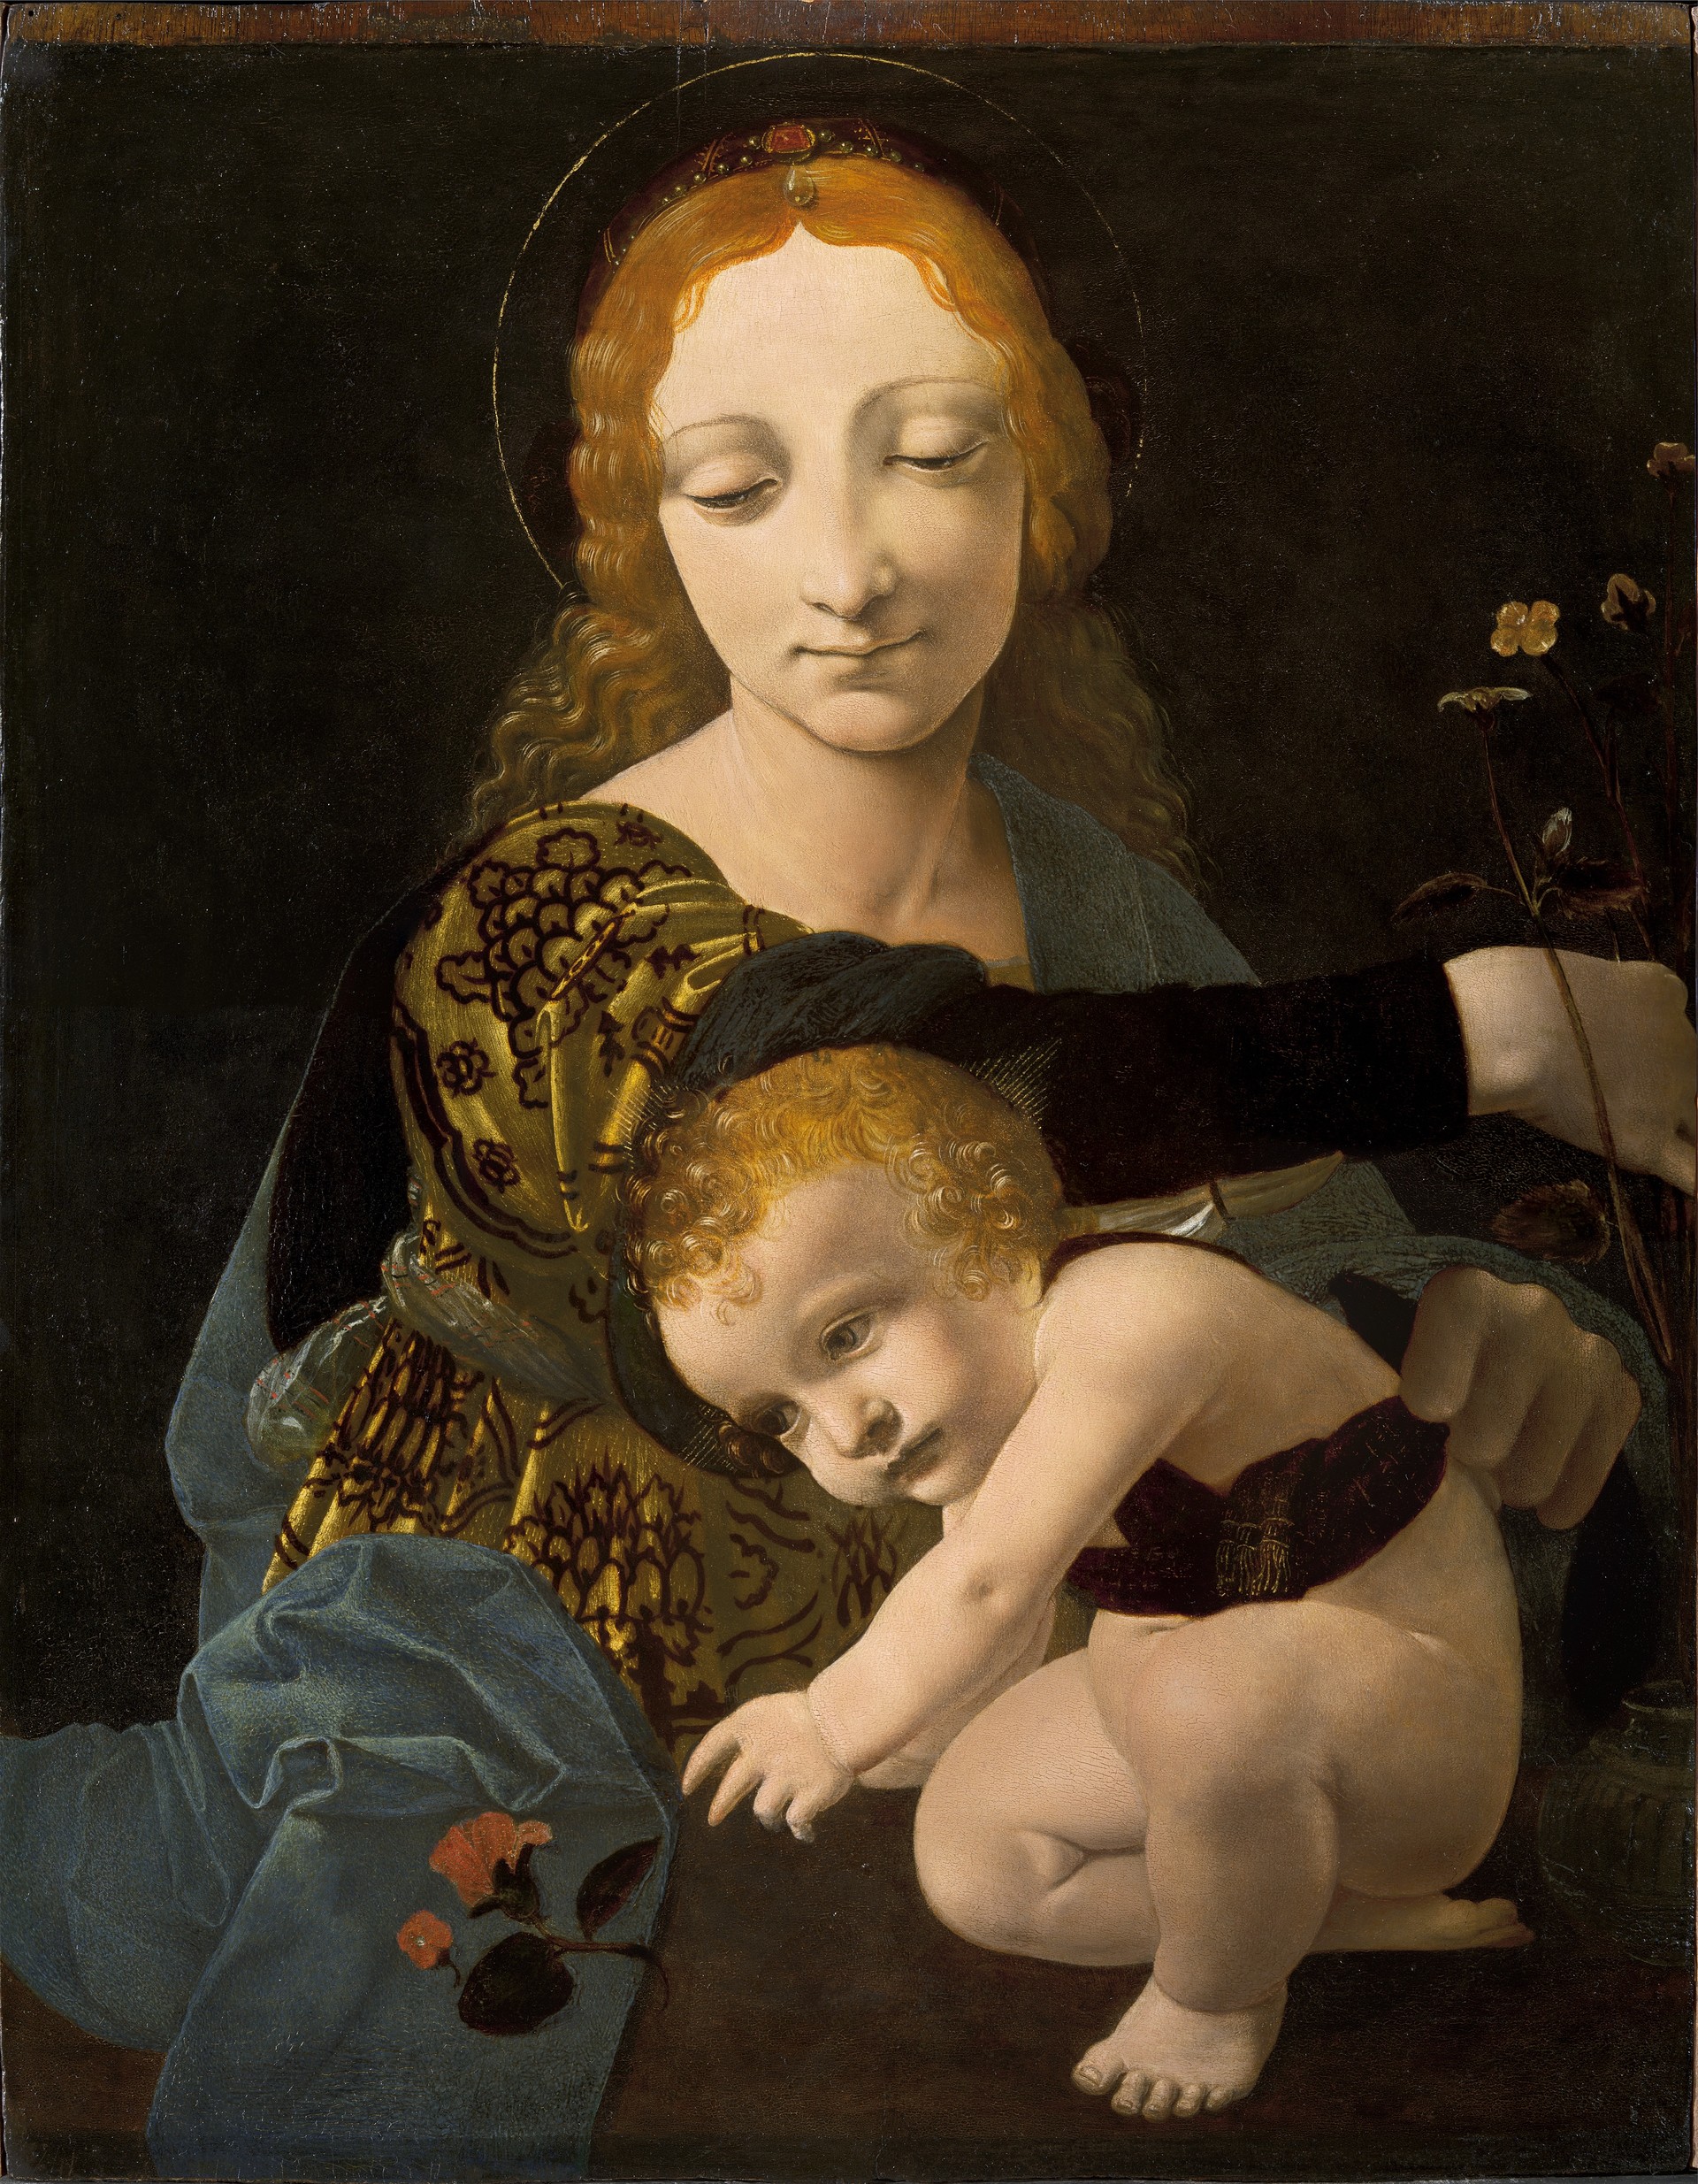 La Madonna con il Bambino di Giovanni Antonio Boltraffio, eseguita verso il 1485-1487 e custodita nel Museo Poldi Pezzoli